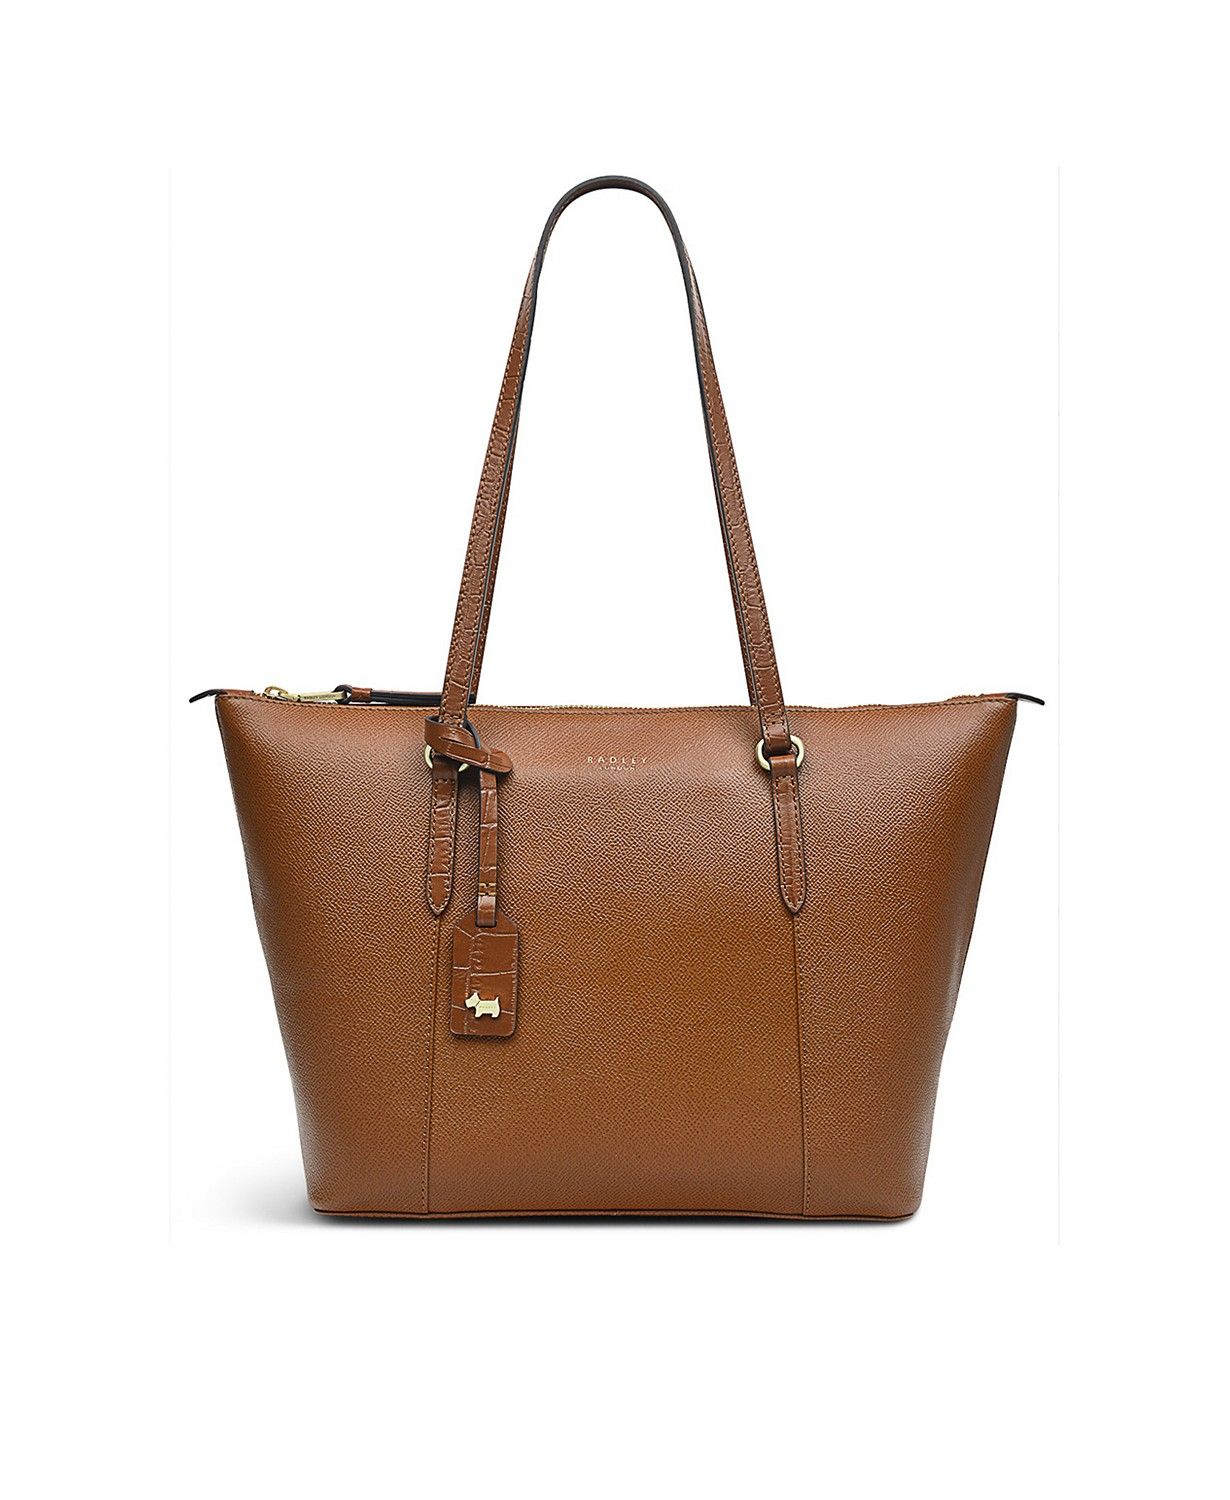 Radley London Angel Street Large Leather Tote & Reviews - Handbags & Accessories - Macy's | Macys (US)